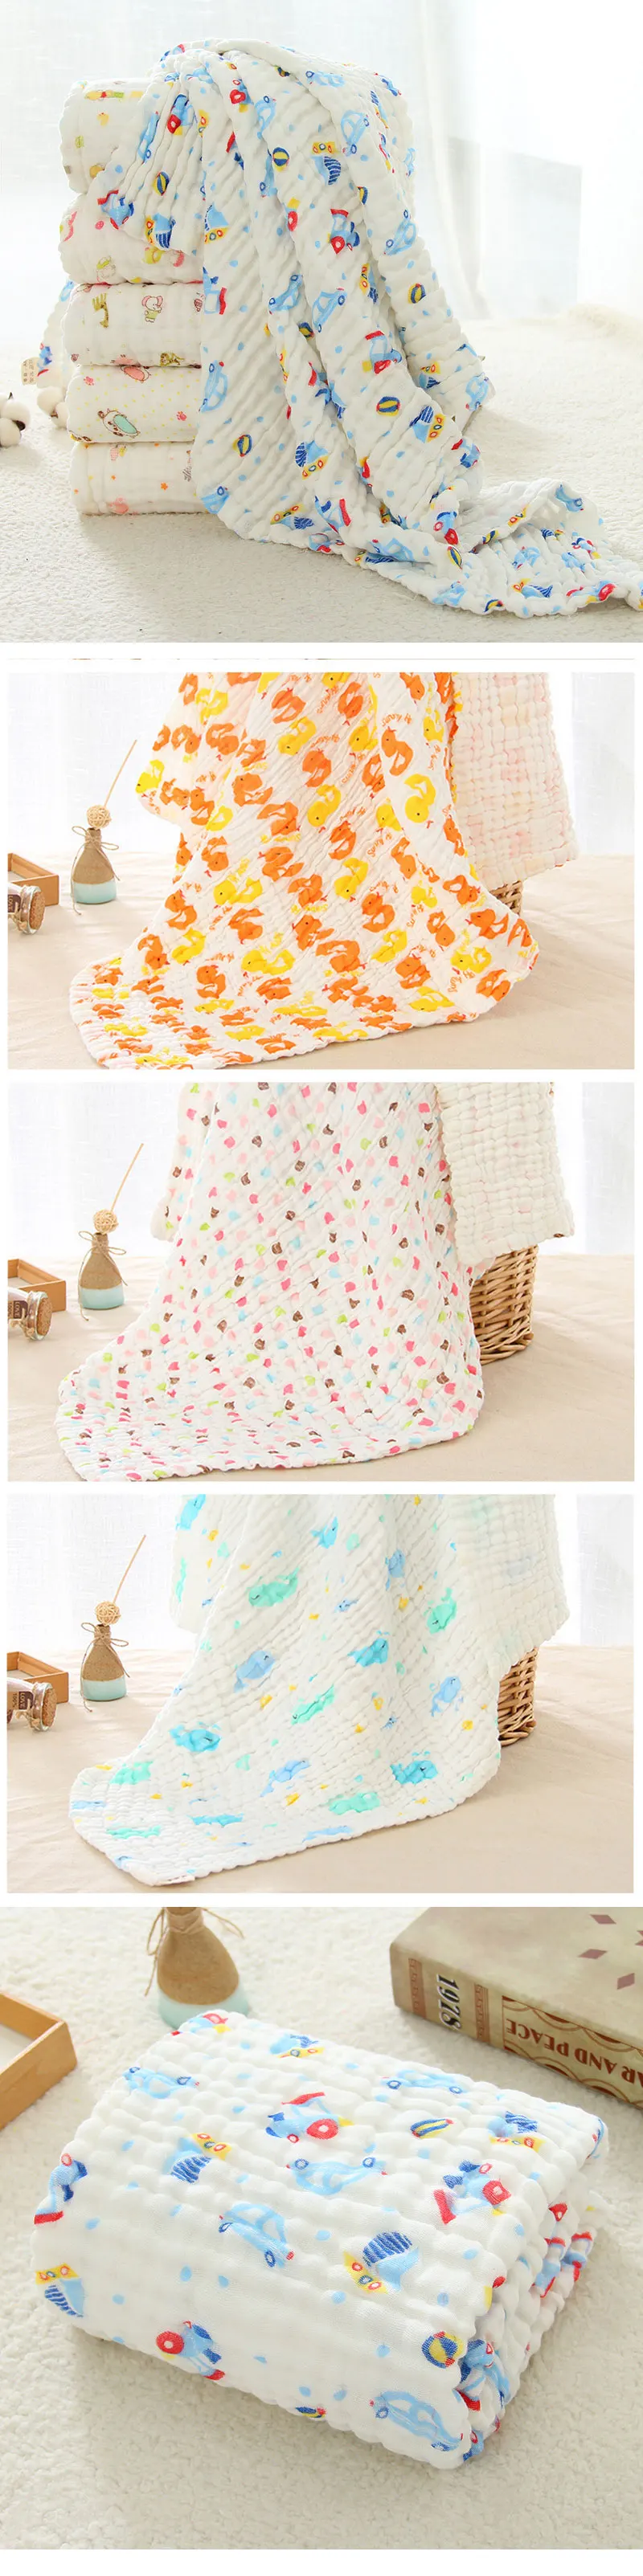 Муслин пеленание ребенка Одеяло s пеленание 100% хлопок пеленать Обёрточная бумага для новорожденных 6 Слои банное полотенце детское